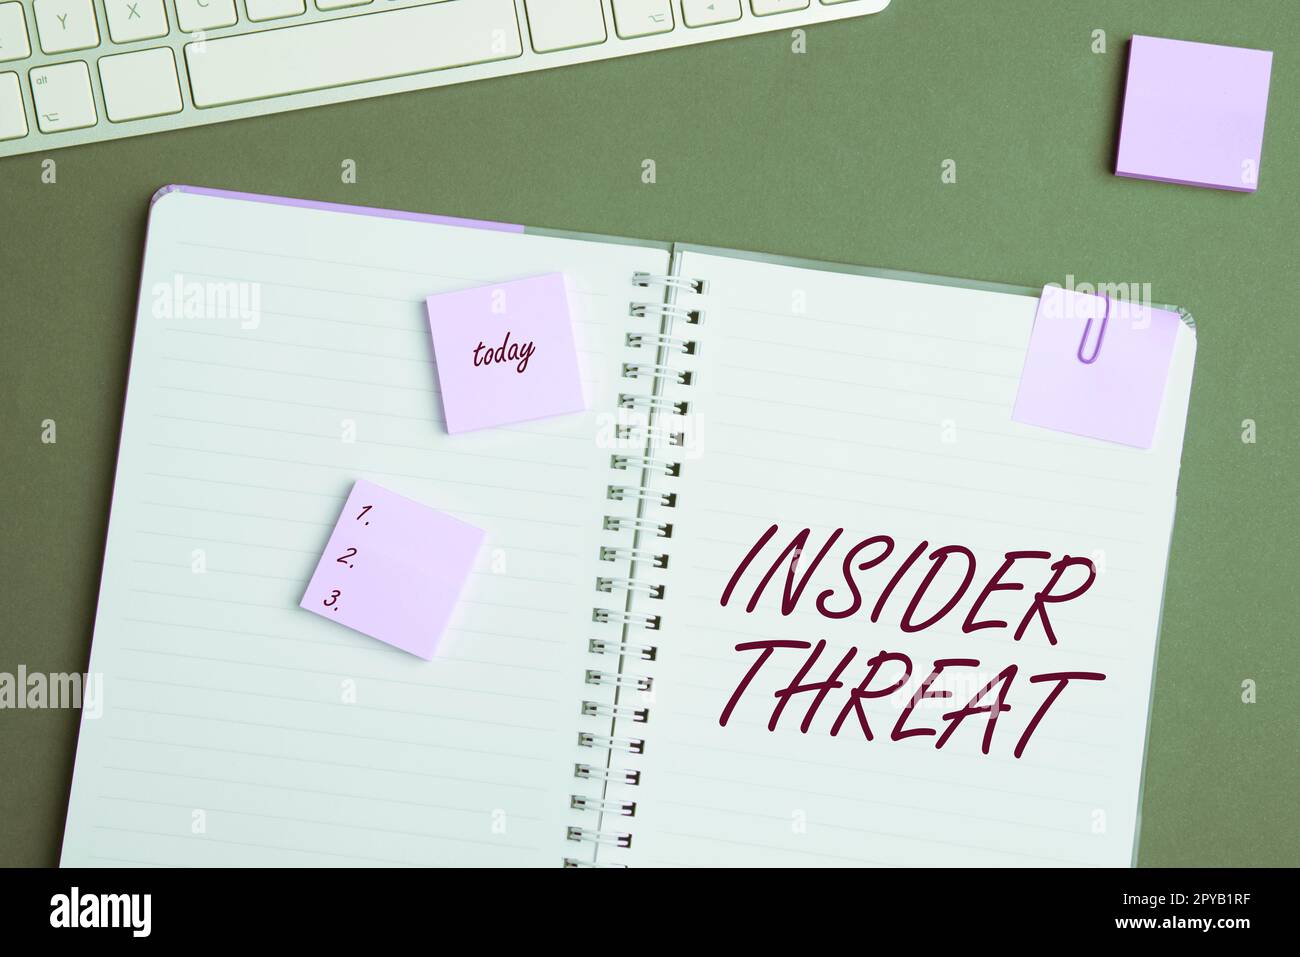 Schild mit Insider-Bedrohung. Sicherheitsbedrohung durch das Internet-Konzept, die innerhalb des Unternehmens entsteht Stockfoto